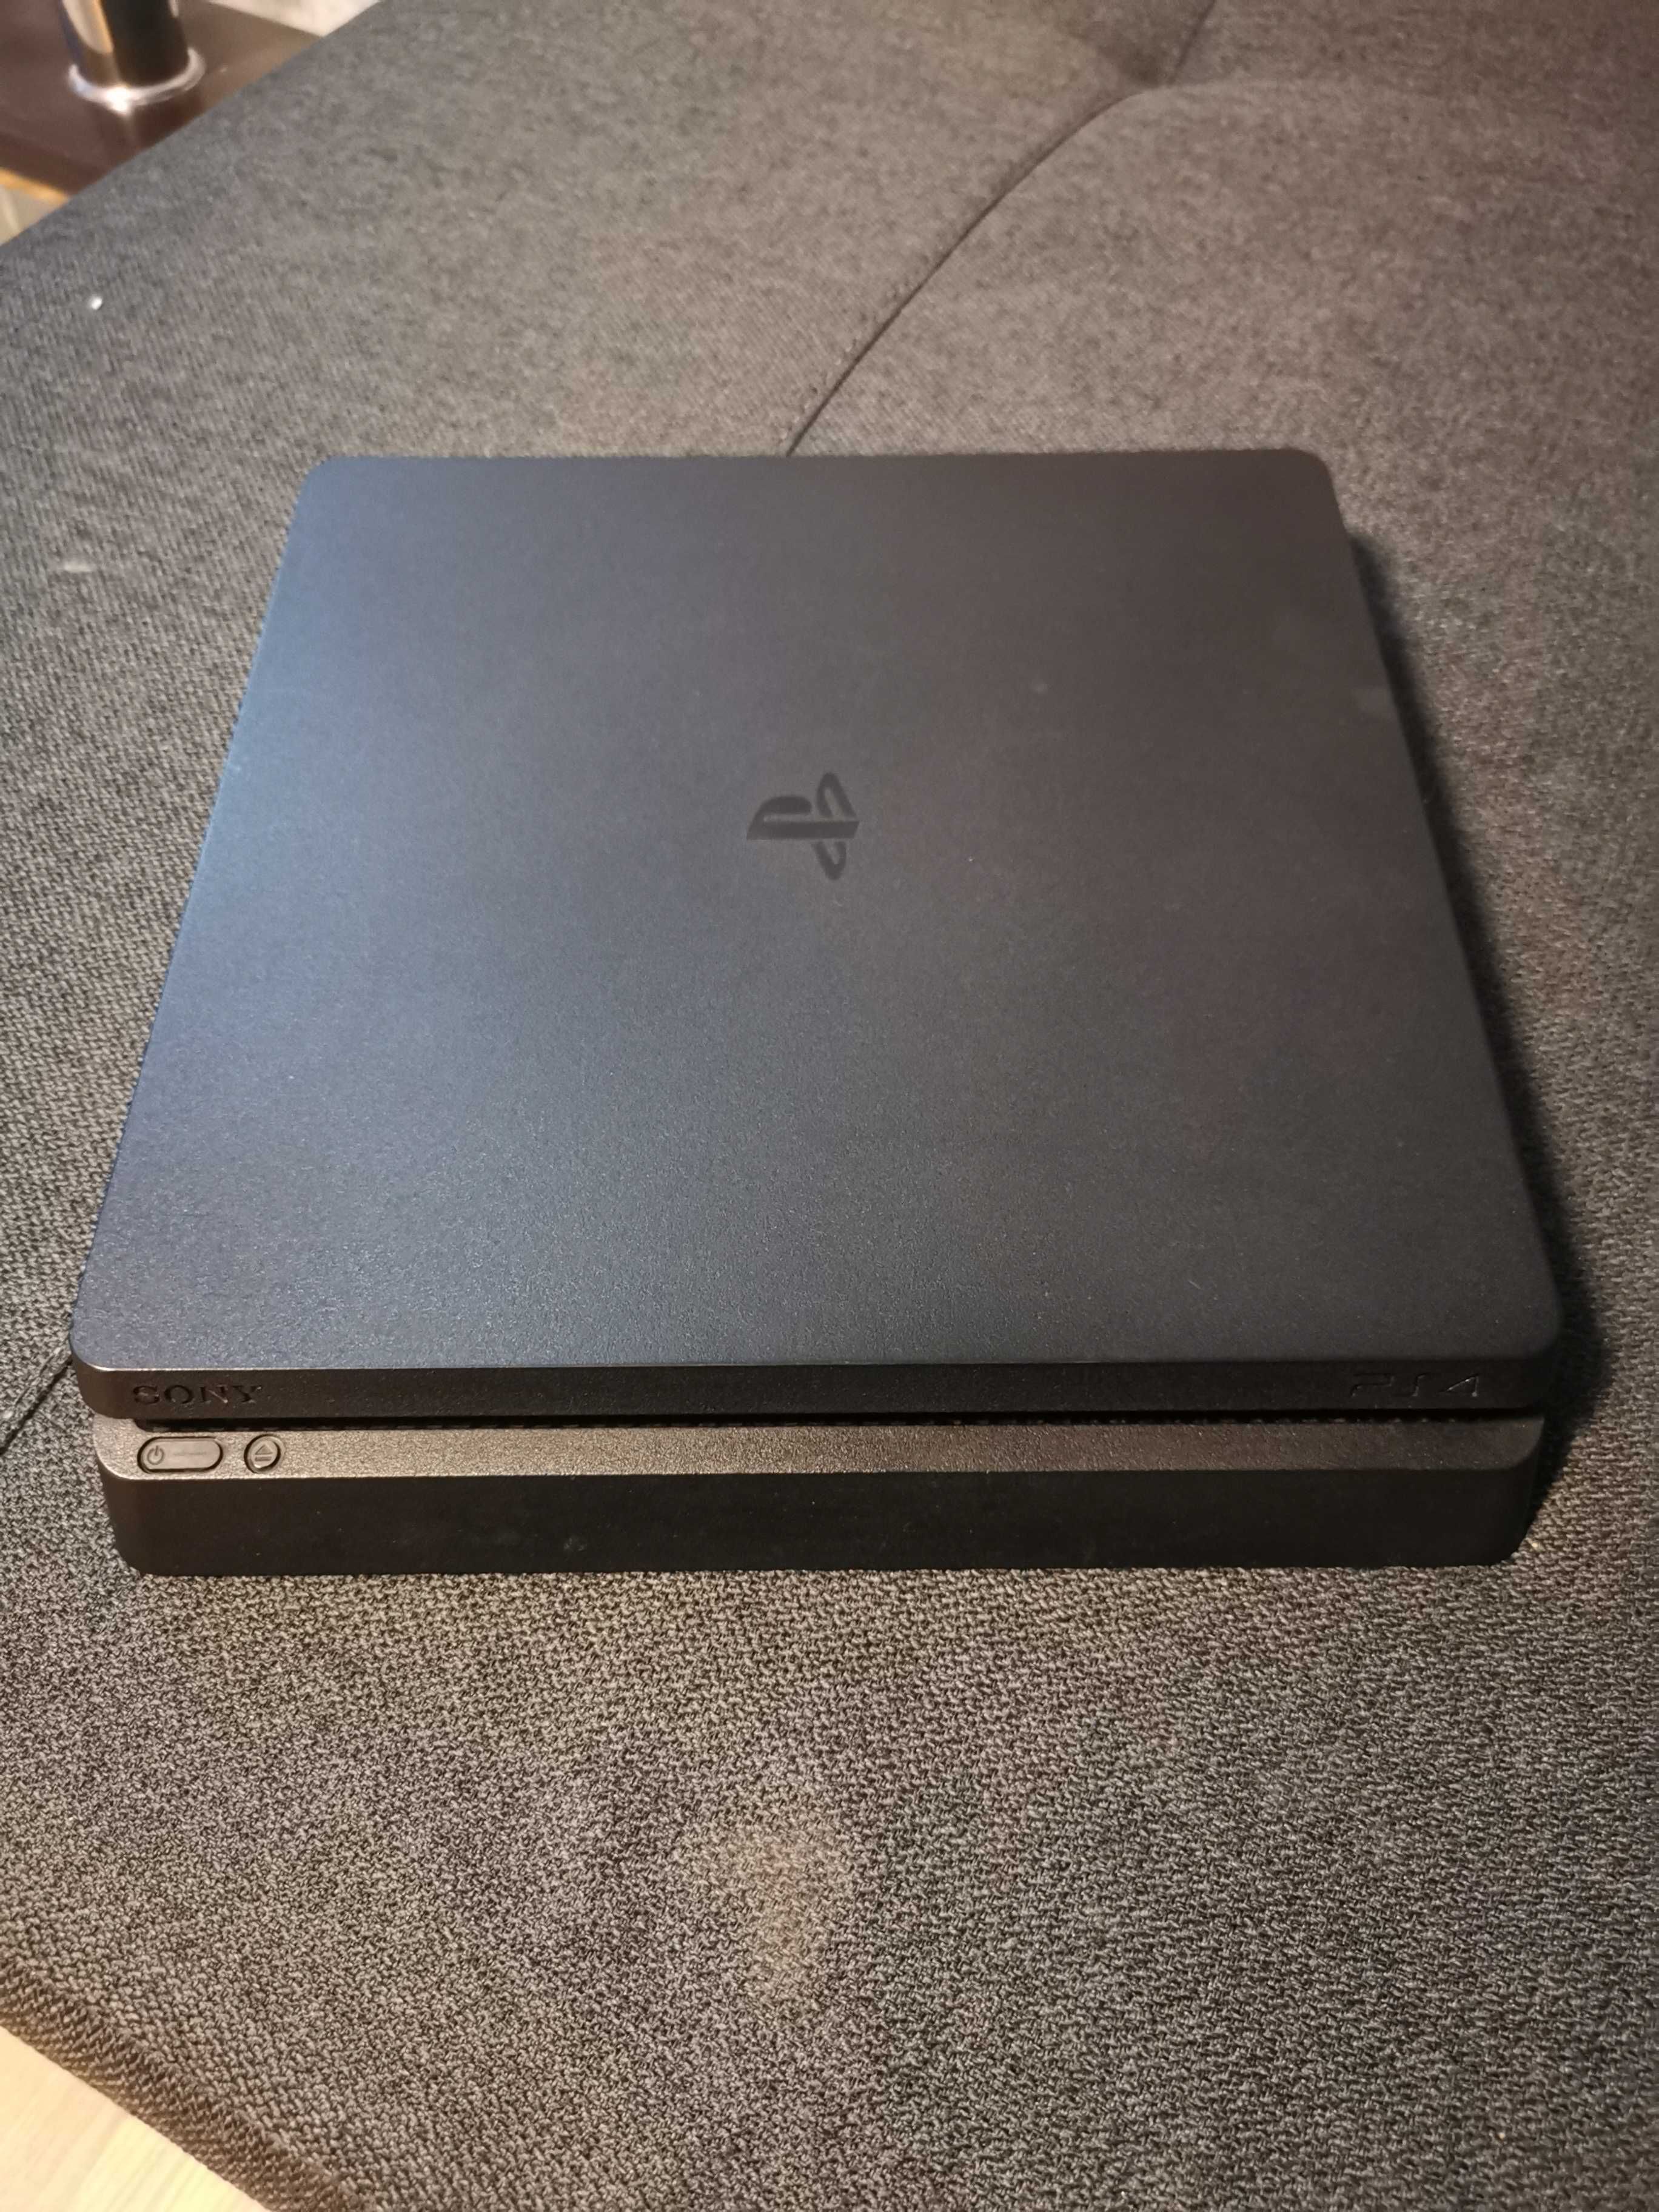 Consola Sony PlayStation 4,ps4